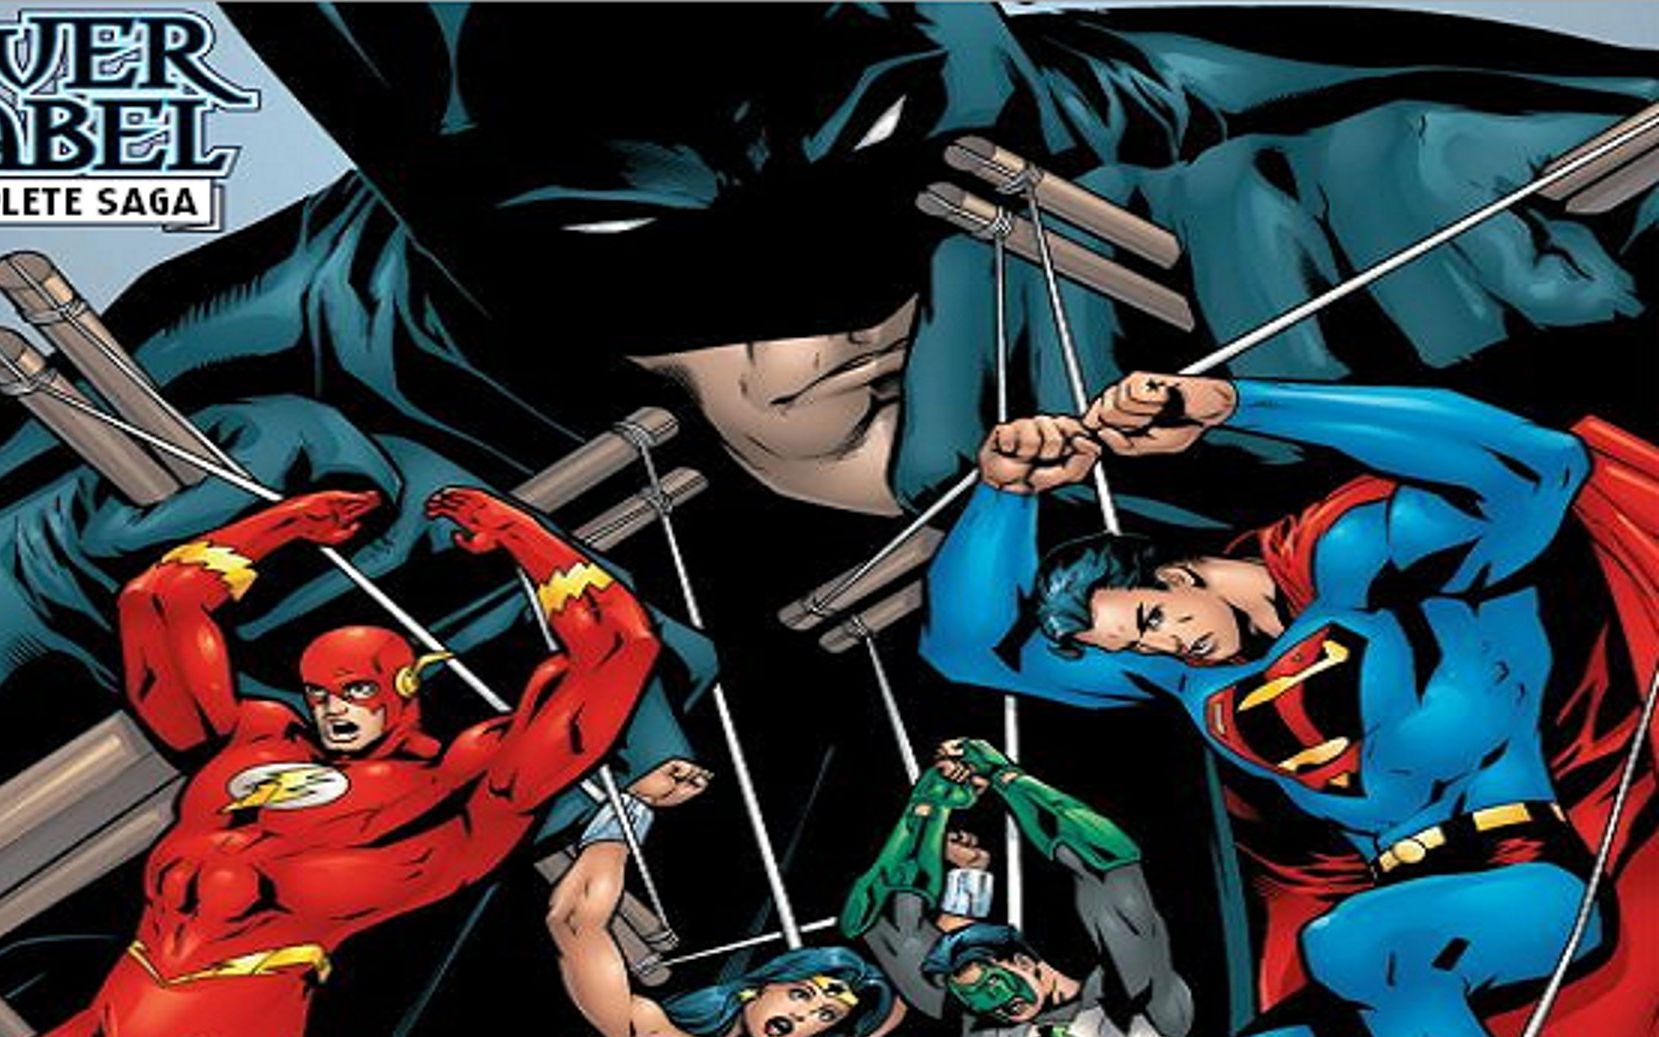 [图]【呆面字幕】凯文叔配音蝙蝠侠对正义联盟全员反制策略